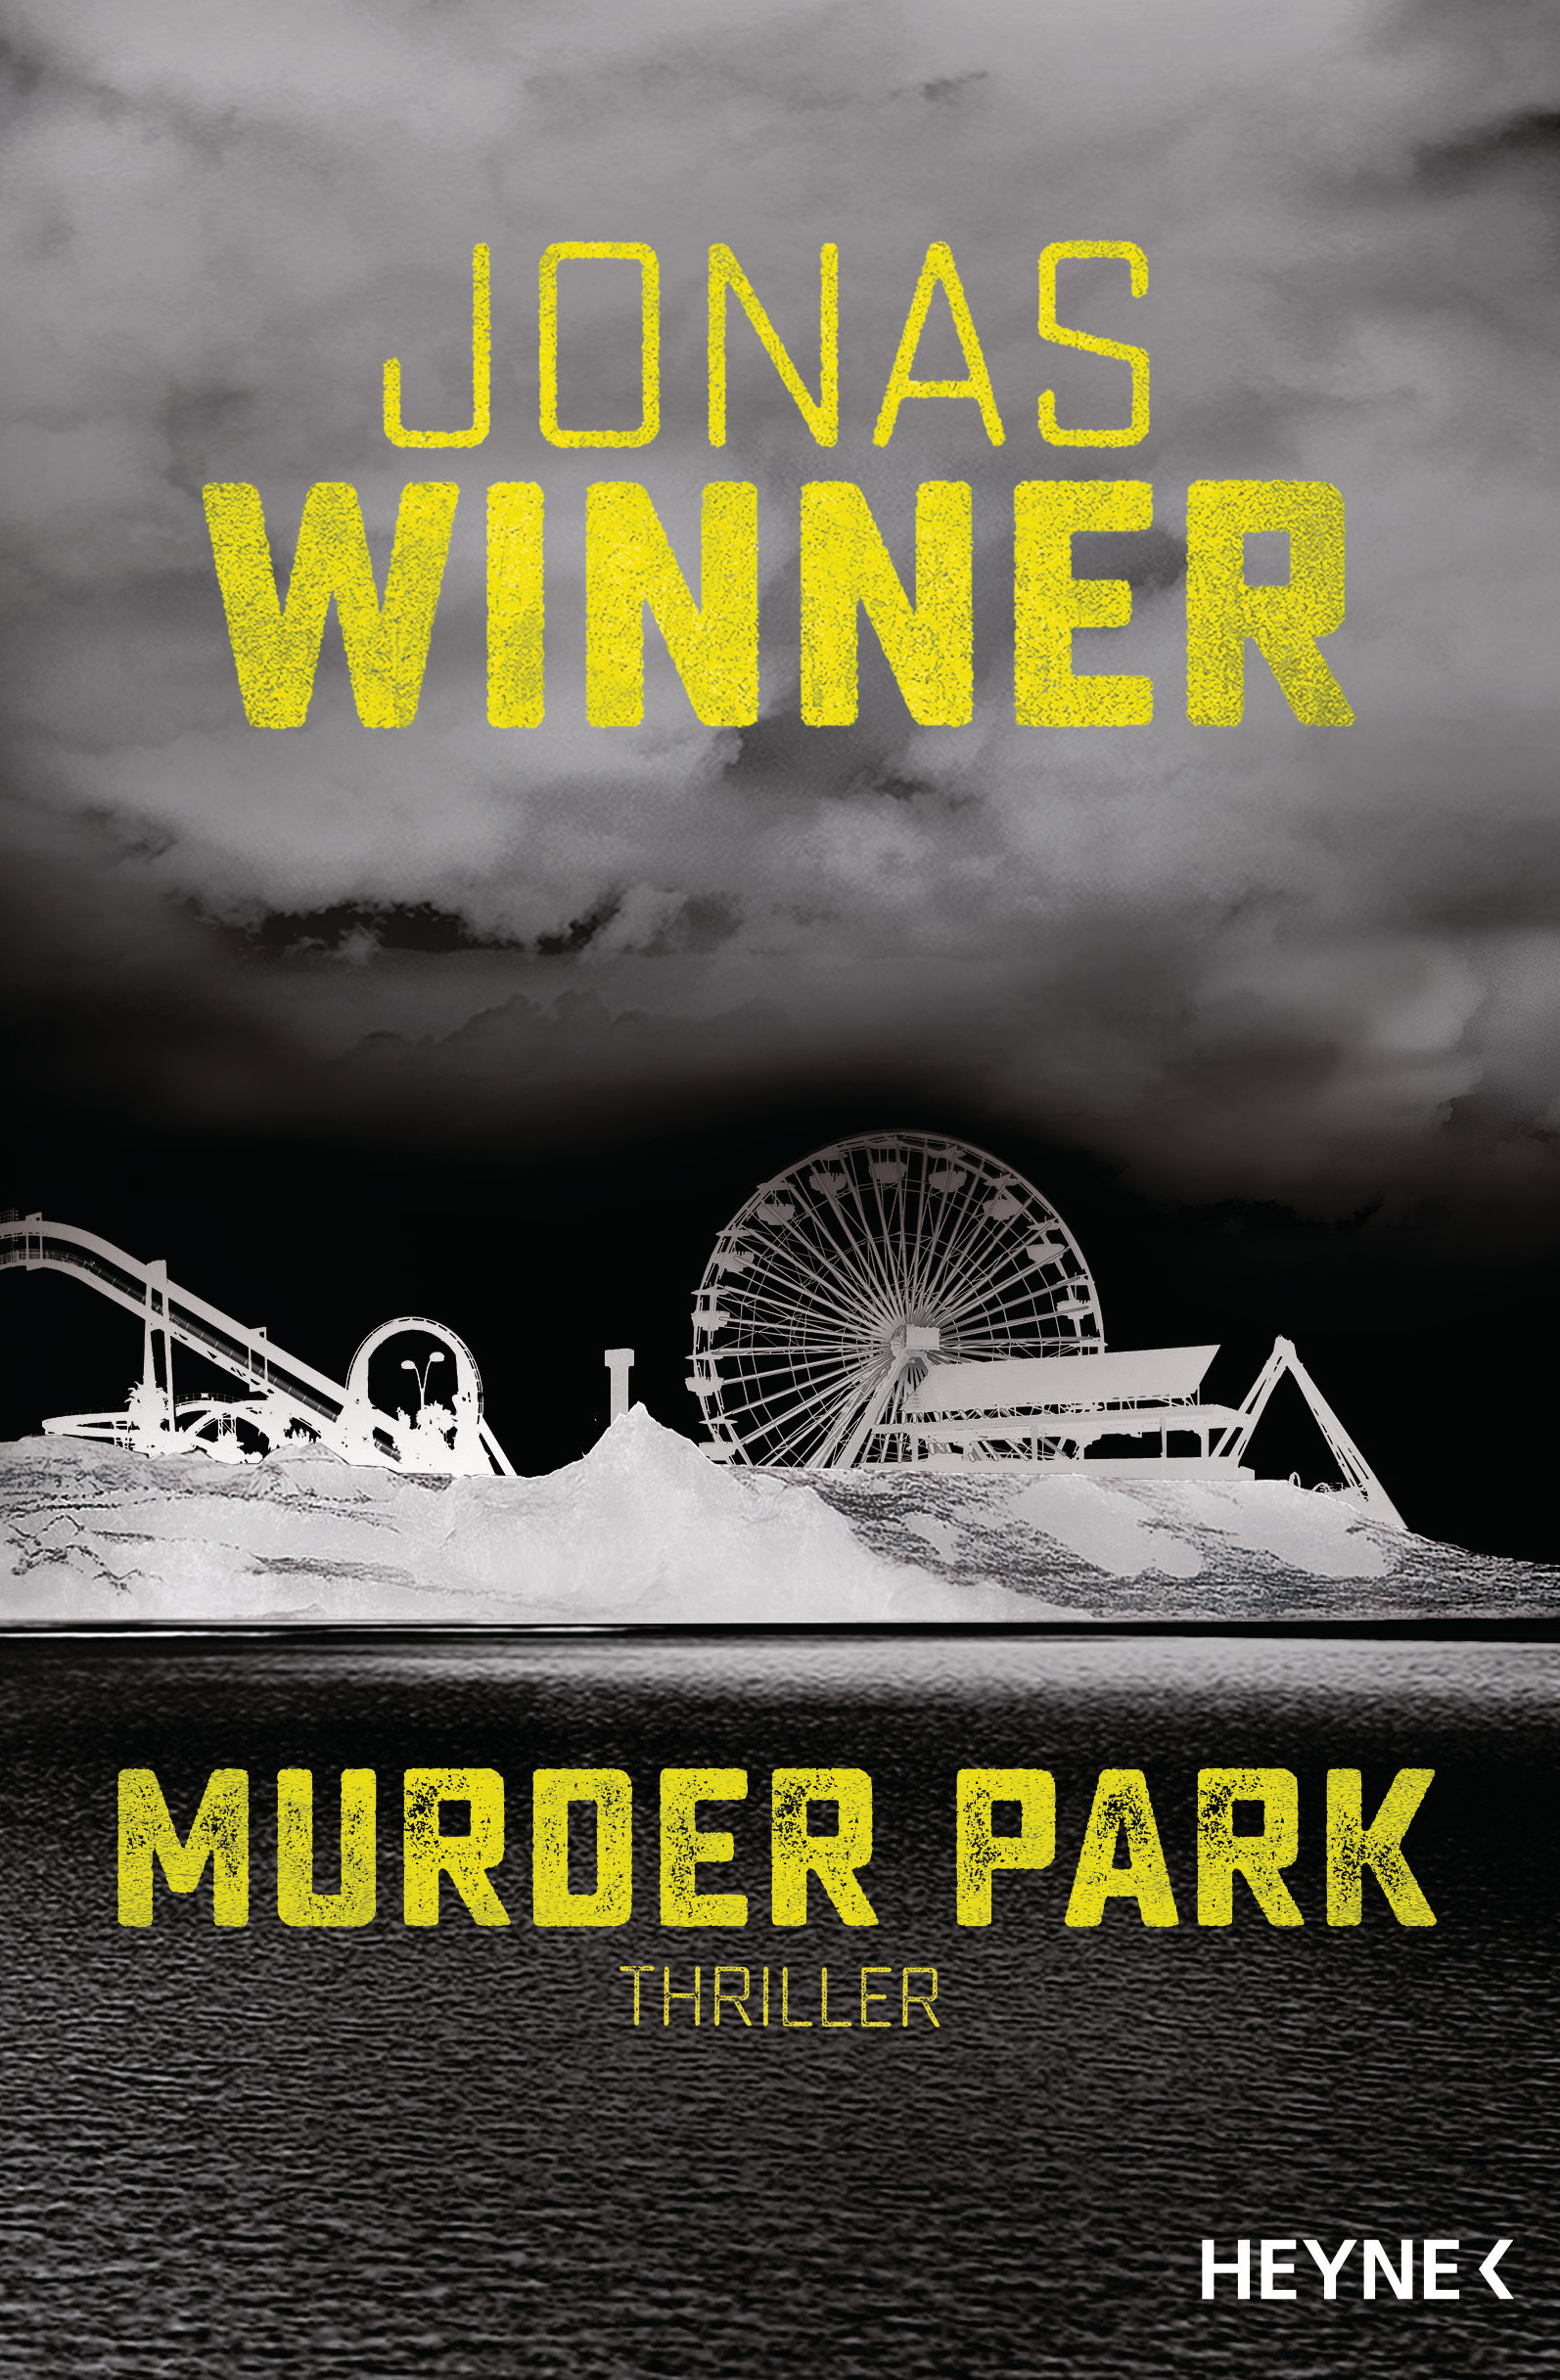 Bildergebnis für murder park winner